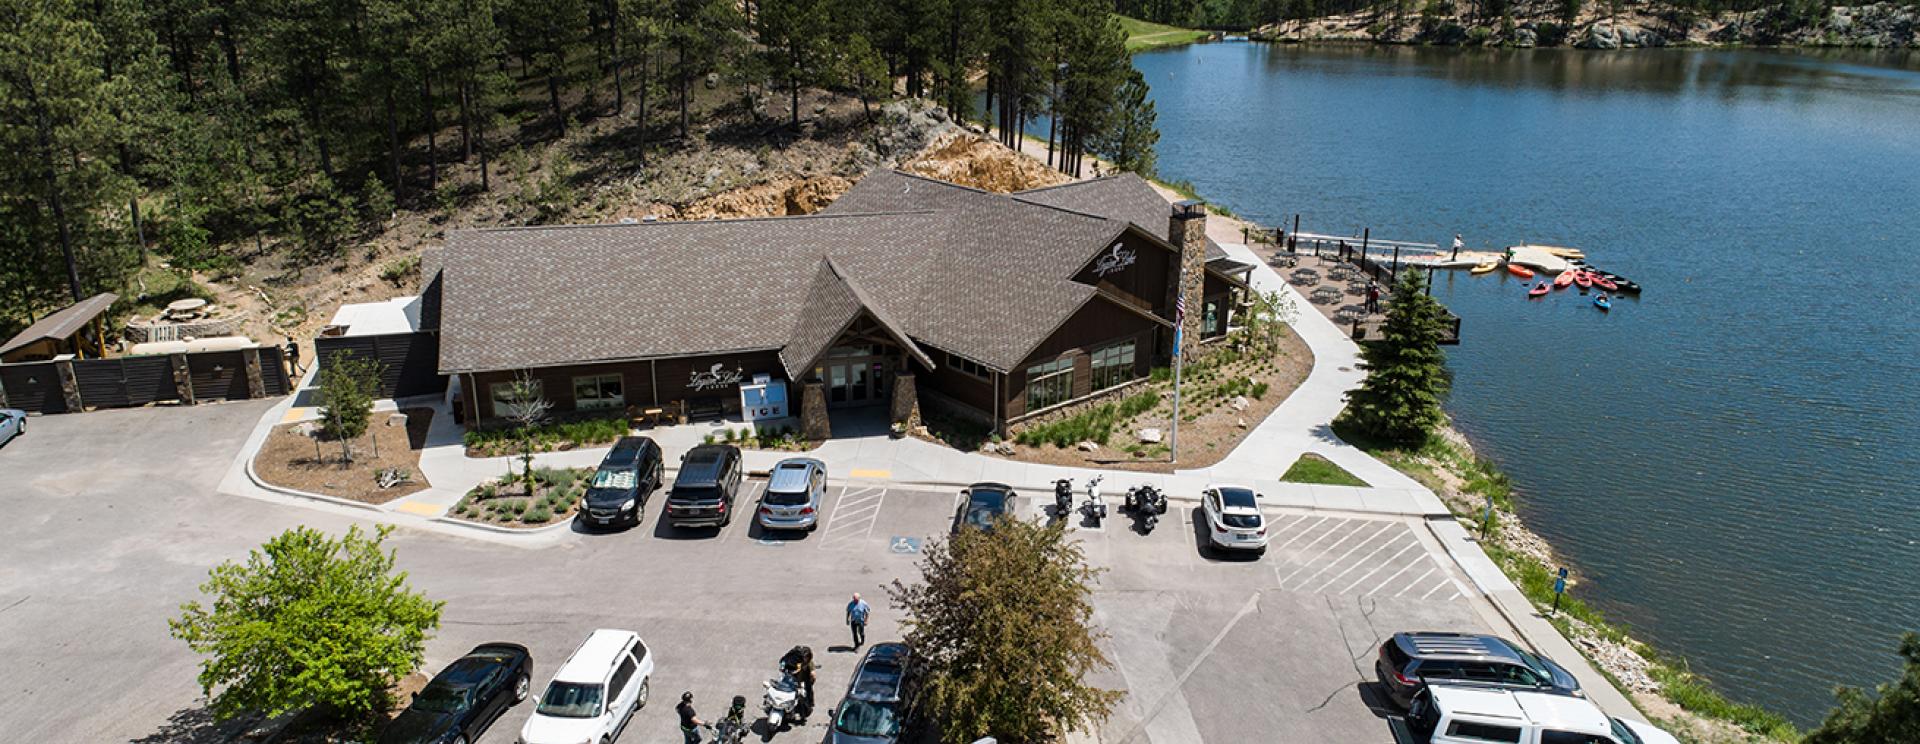 Legion Lake Lodge at Custer State Park Resort